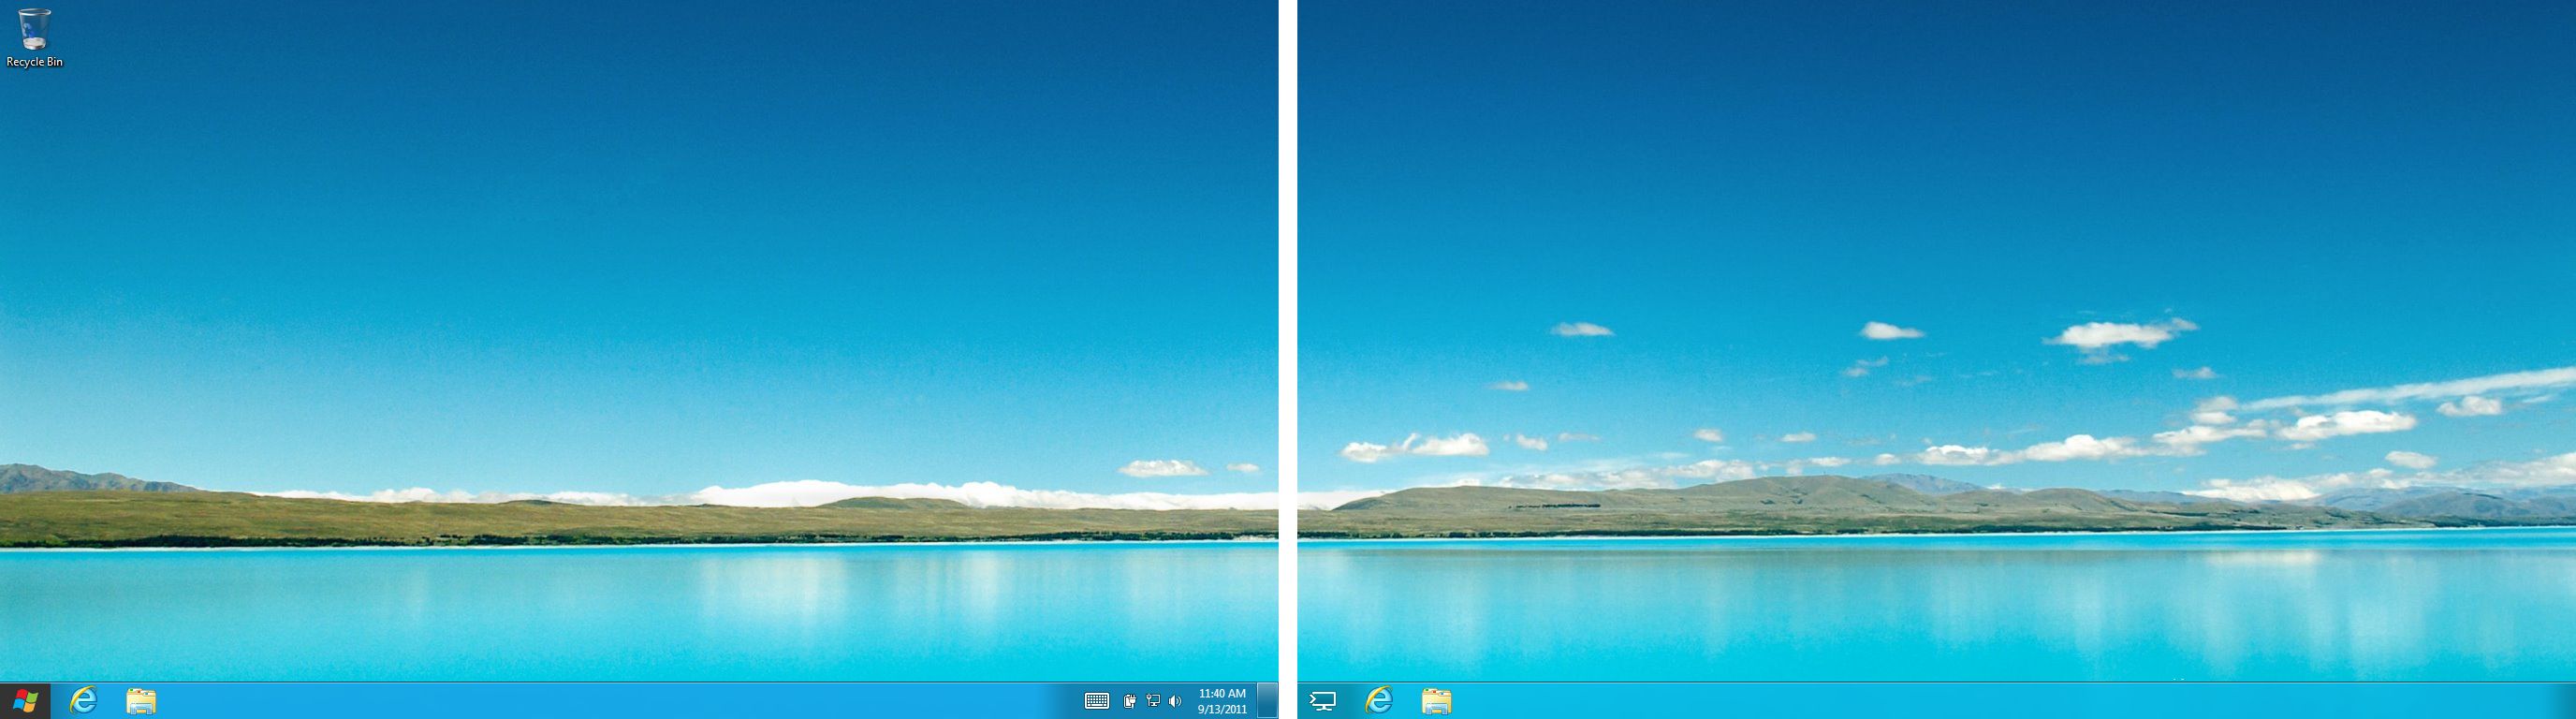 [50+] Windows 8 Multi Monitor Wallpaper - WallpaperSafari